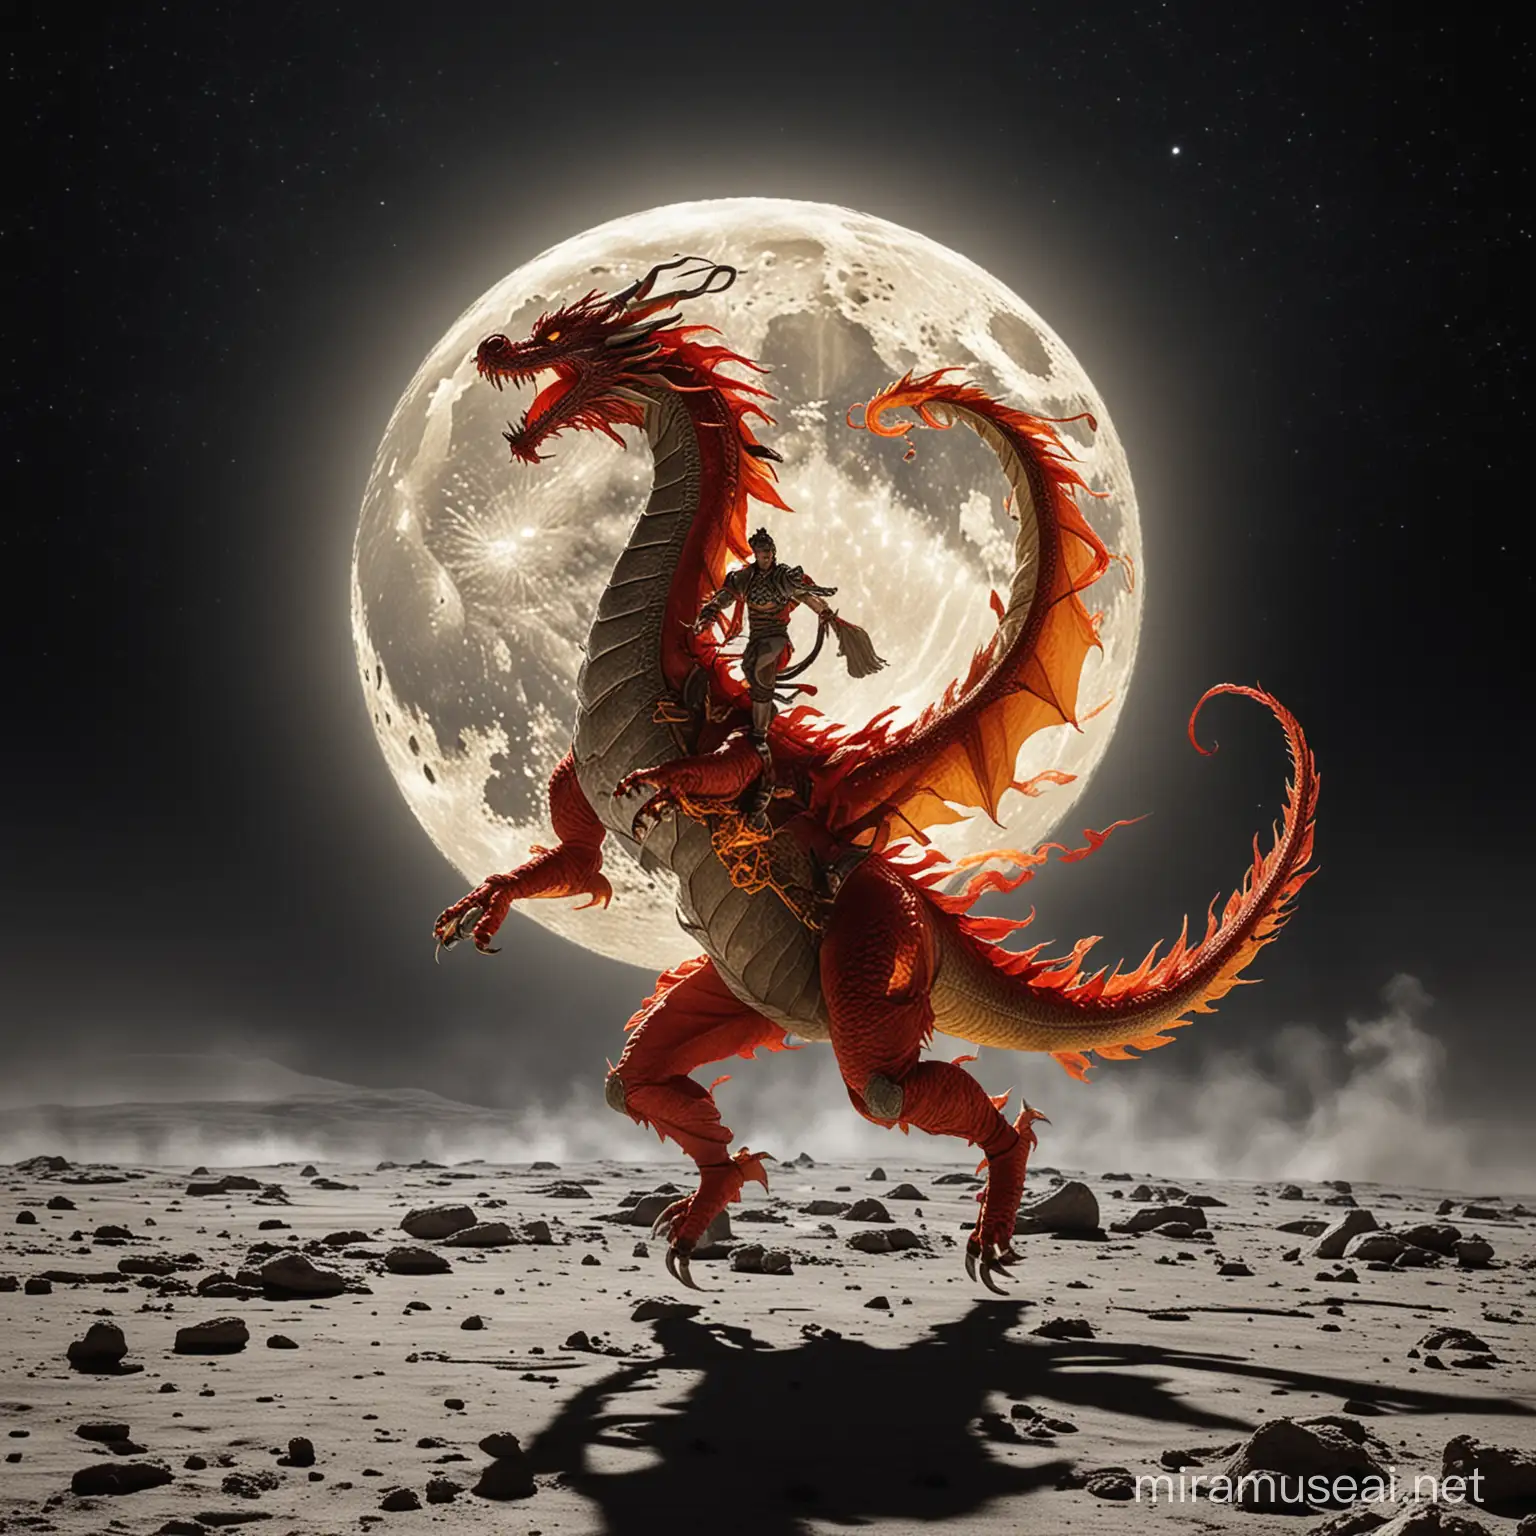 Dragon dancing brake dance on the moon. 